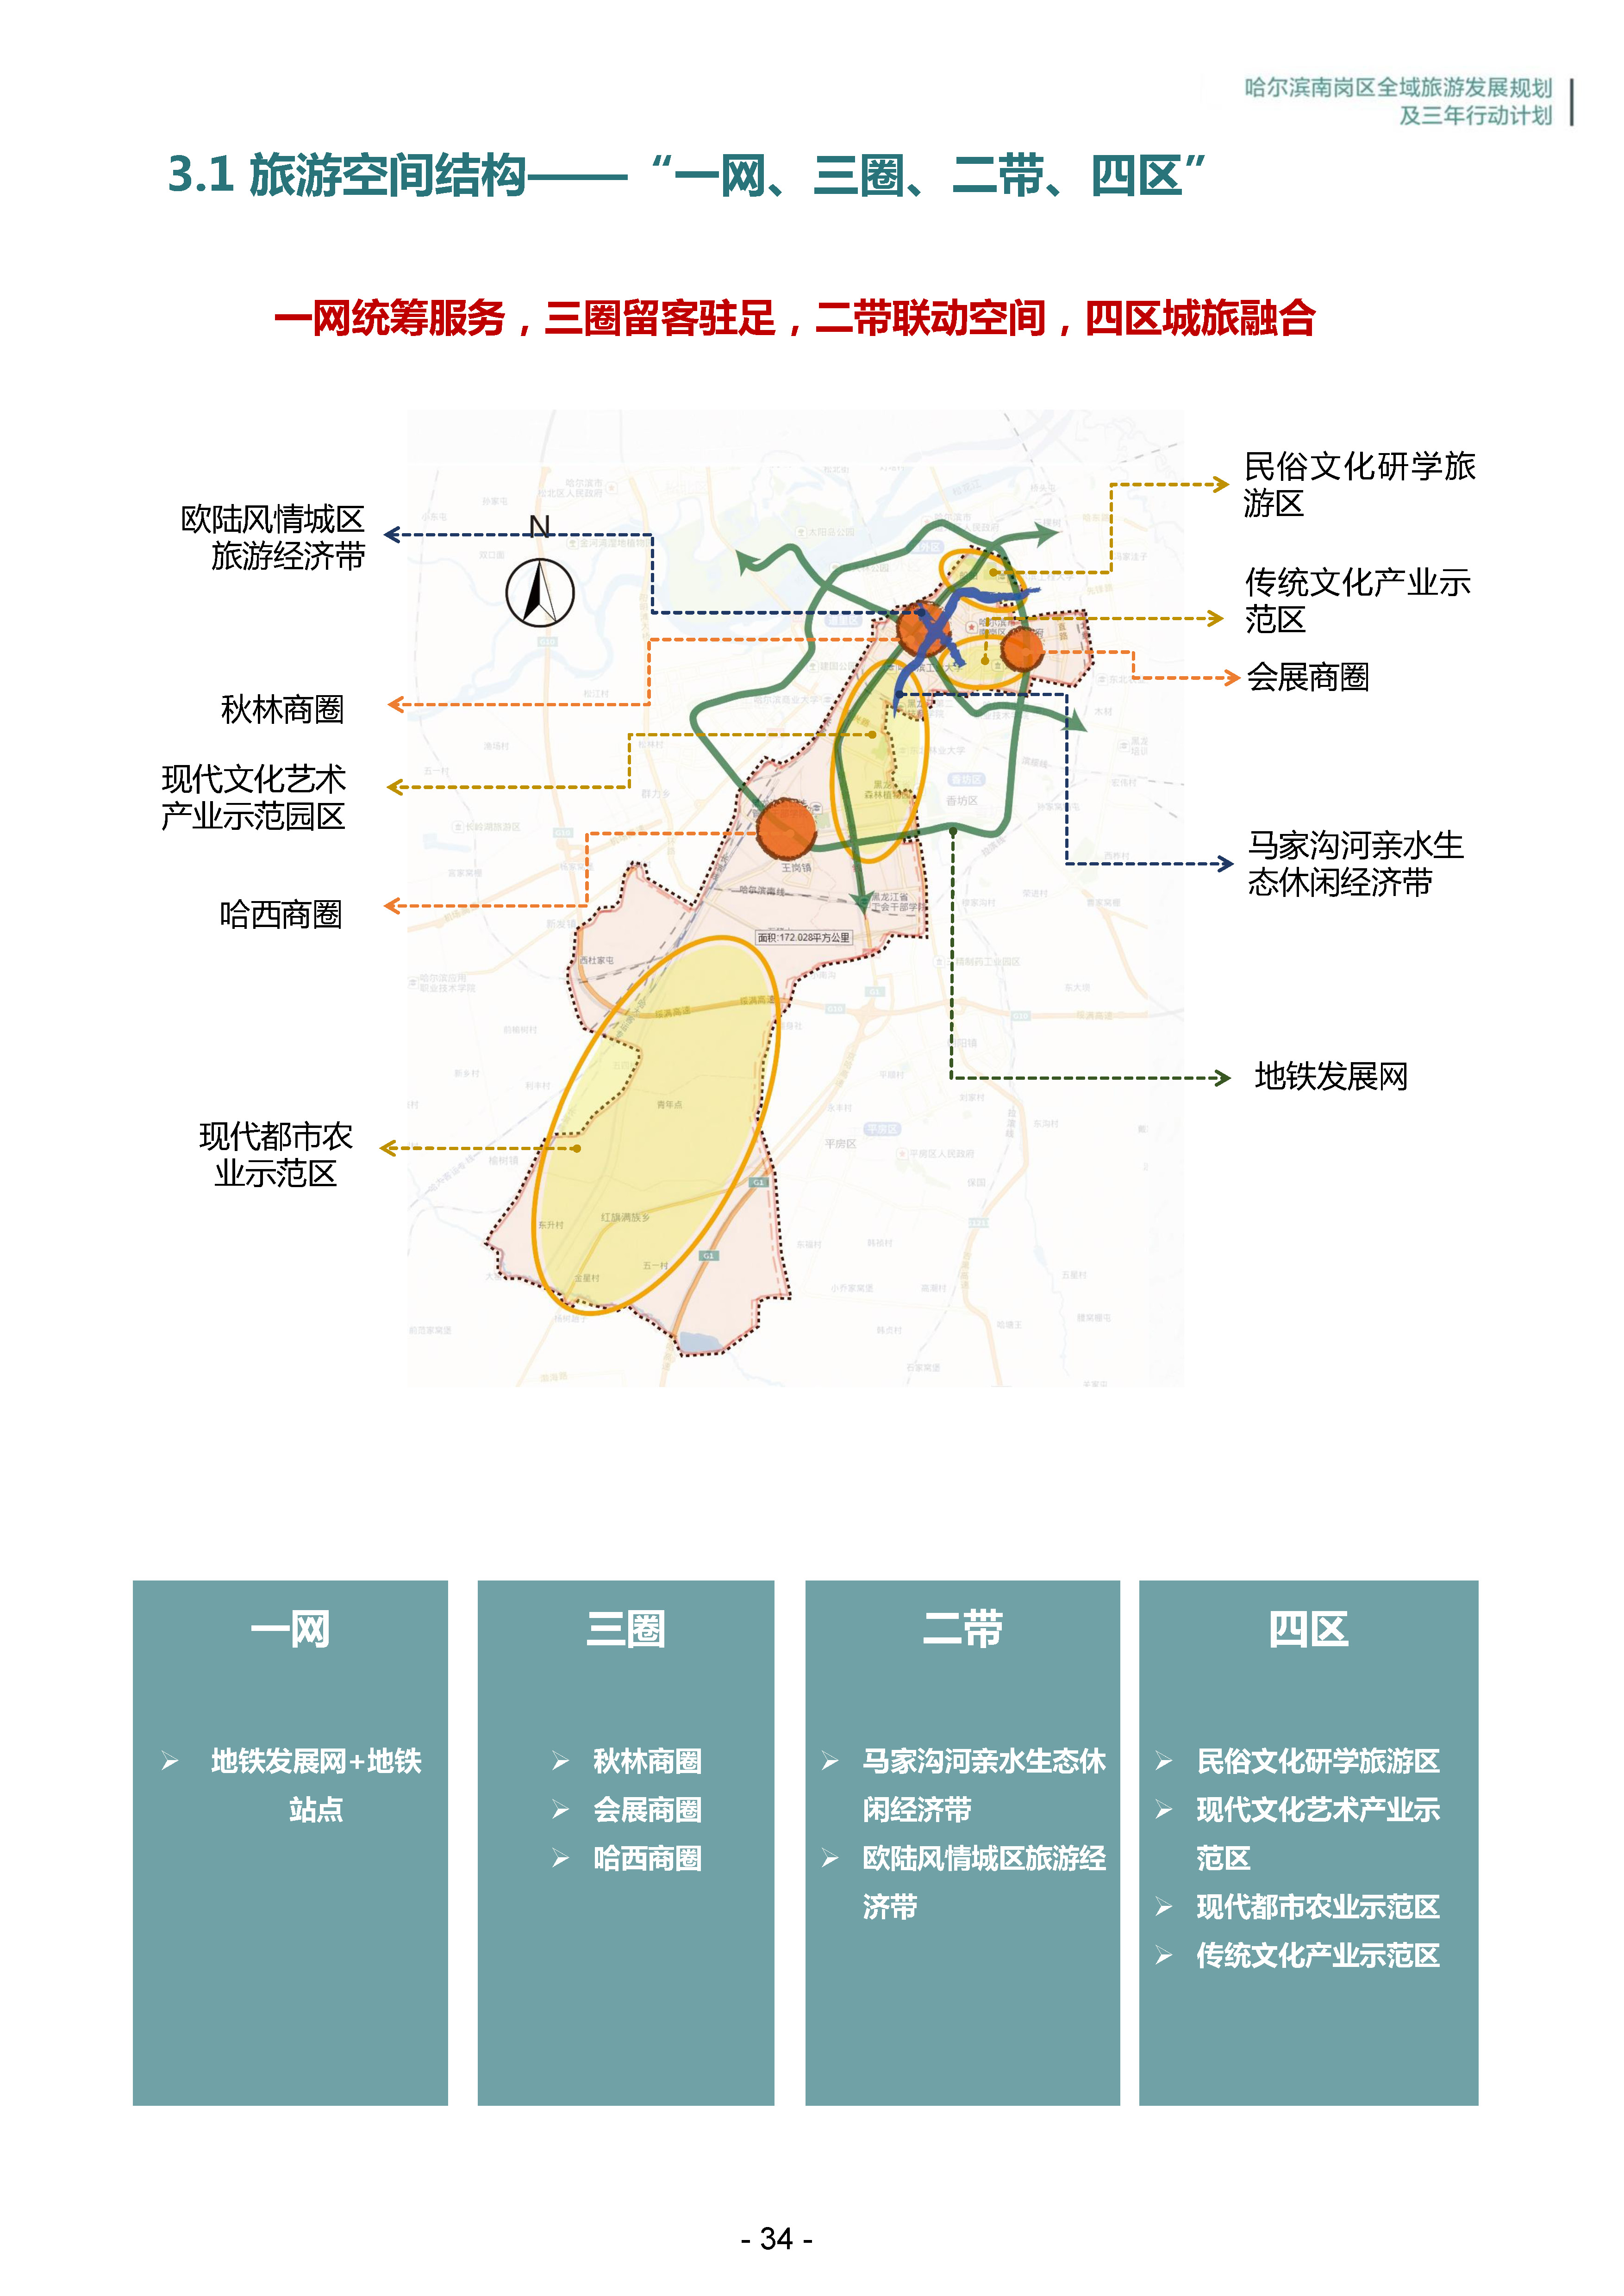 哈尔滨南岗区全域旅游发展战略规划及三年行动计划